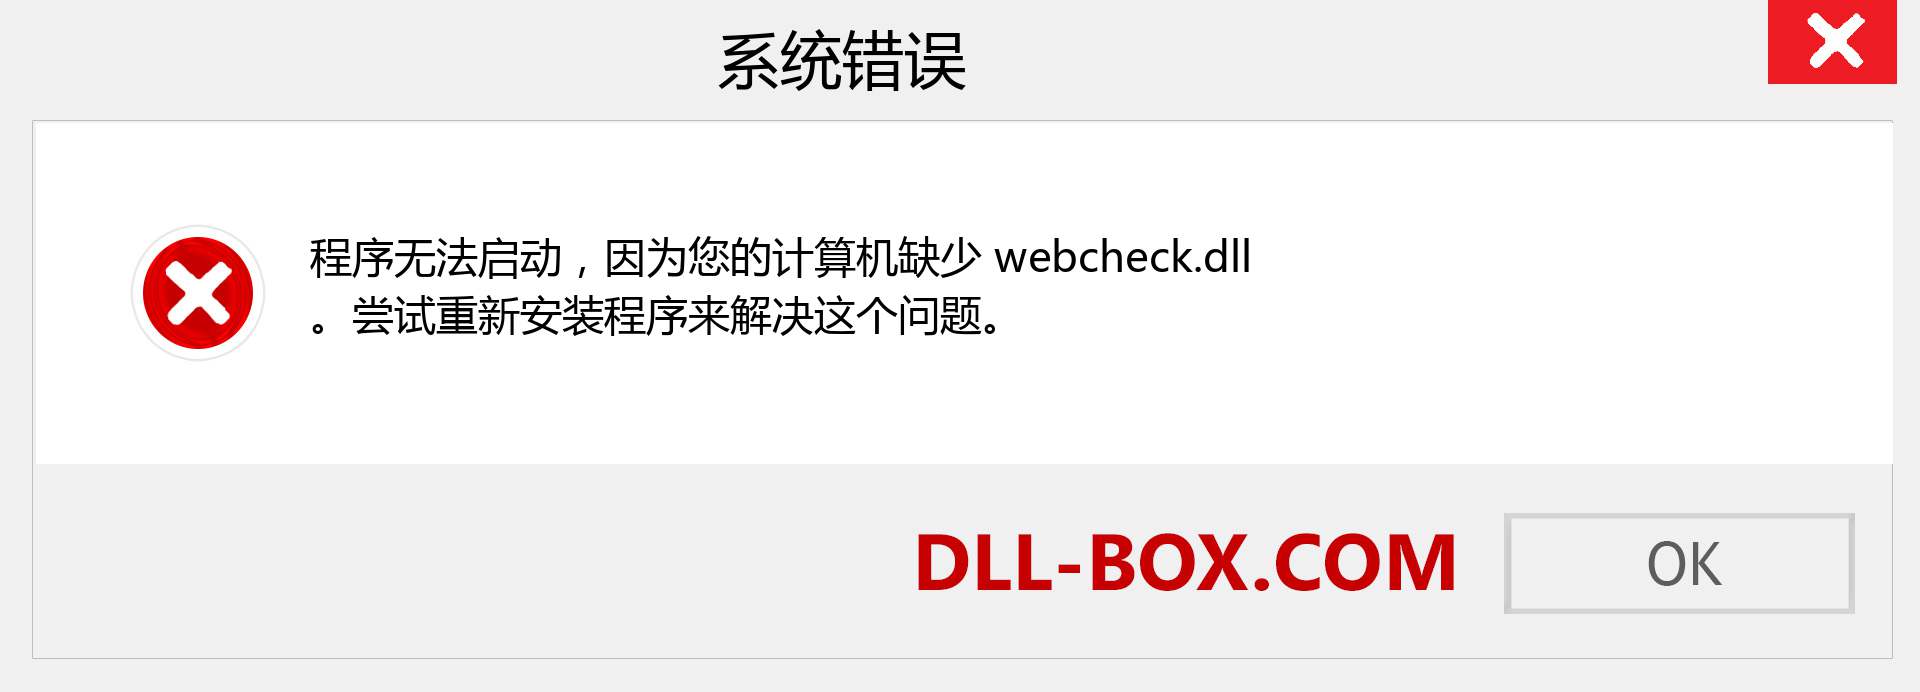 webcheck.dll 文件丢失？。 适用于 Windows 7、8、10 的下载 - 修复 Windows、照片、图像上的 webcheck dll 丢失错误